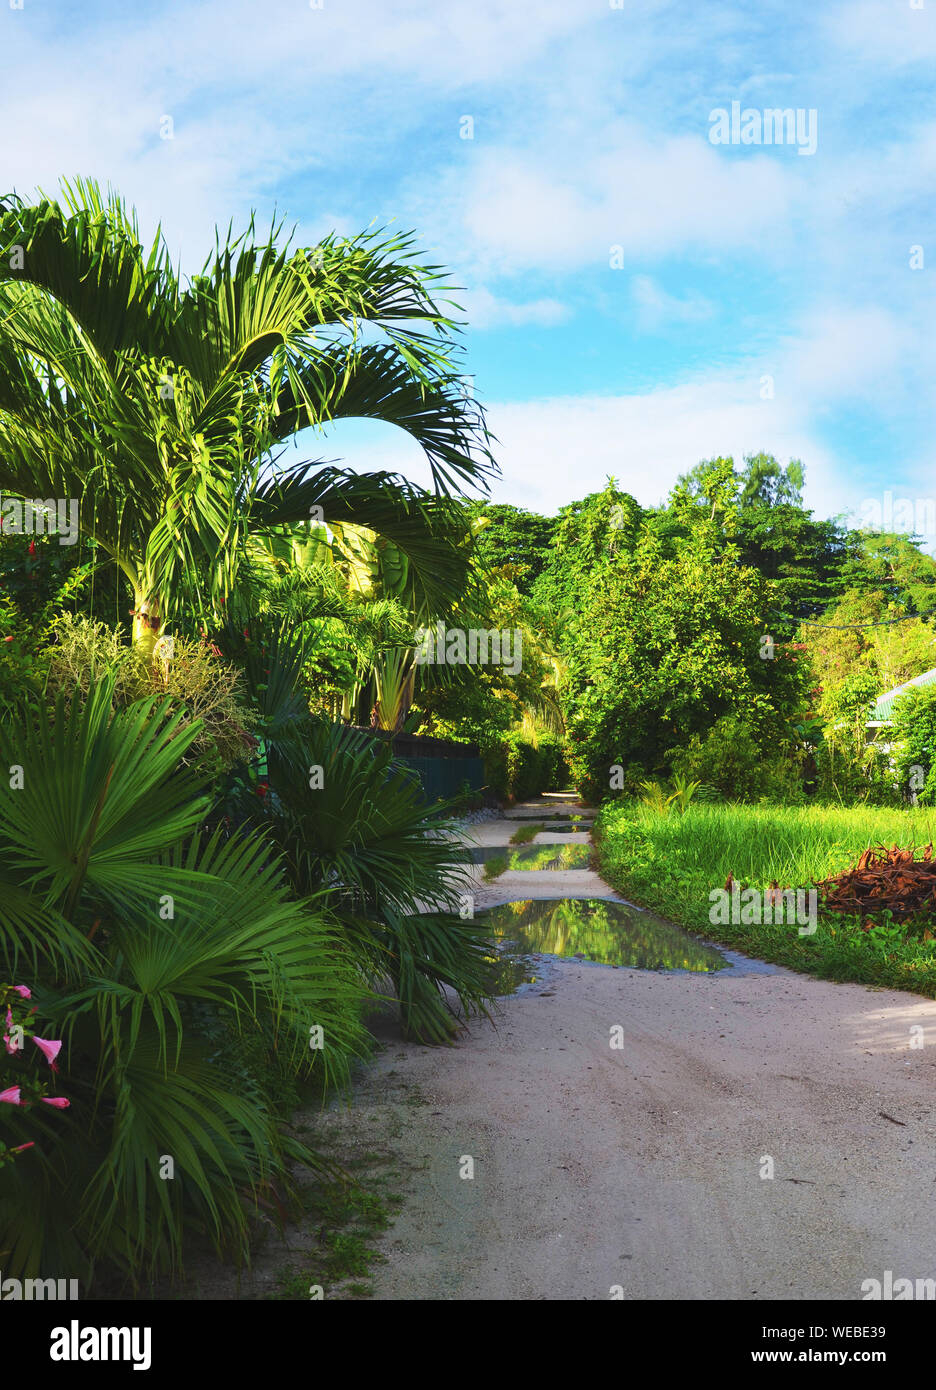 La Digue, Seychelles : d'énormes flaques d'eau après de fortes pluies sur route avec palmiers et végétation luxuriante Banque D'Images